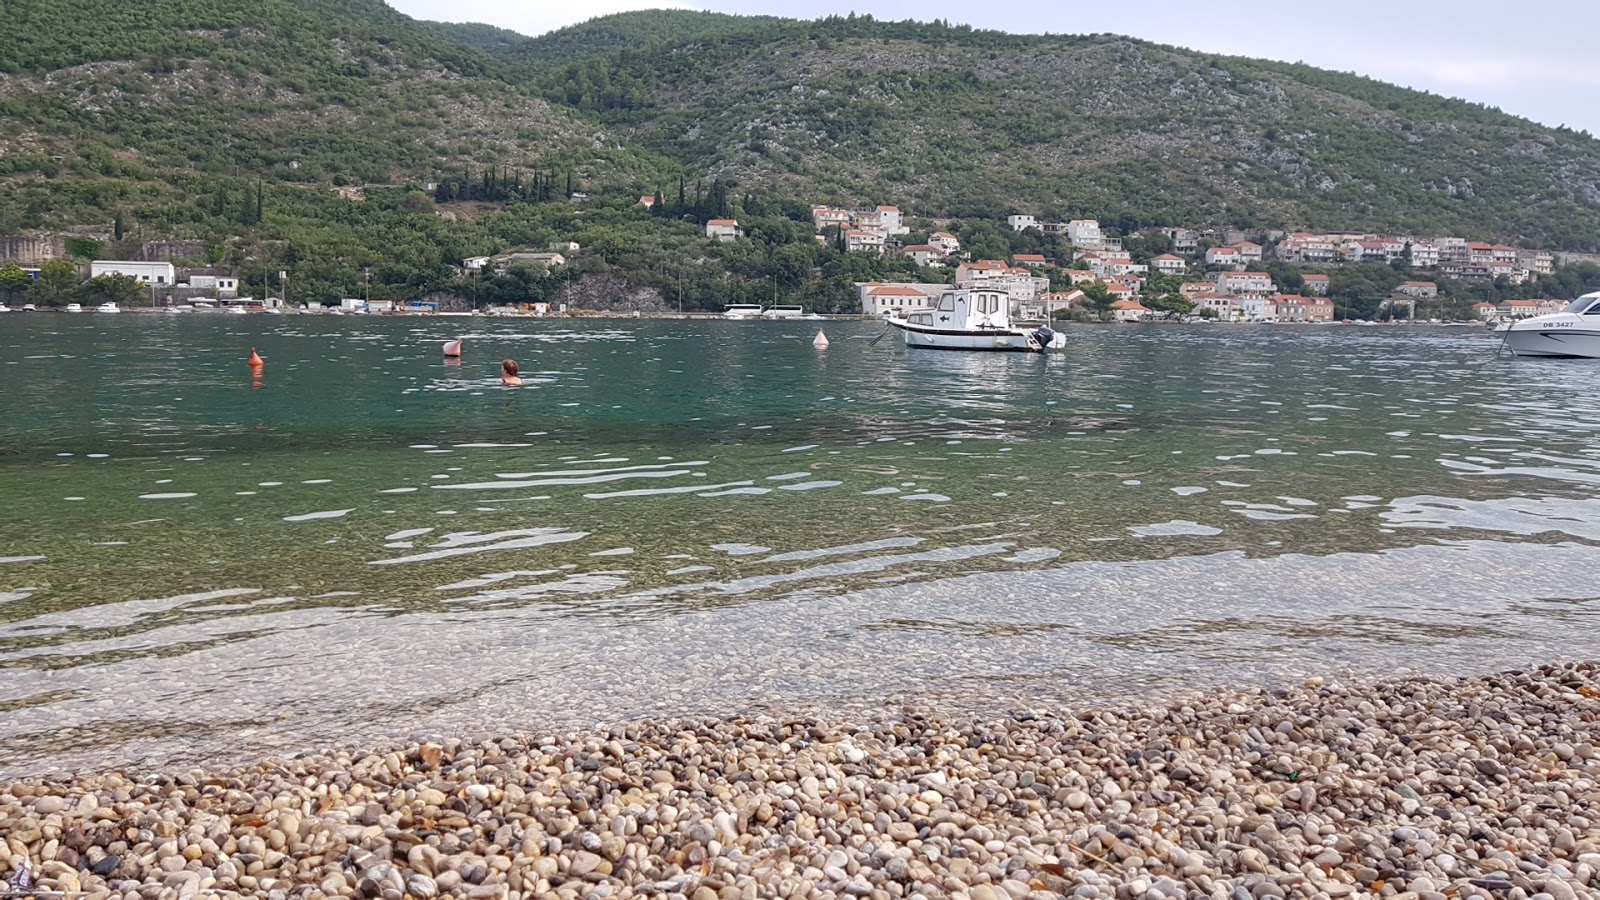 Zdjęcie Rijeka beach z powierzchnią lekki kamyk